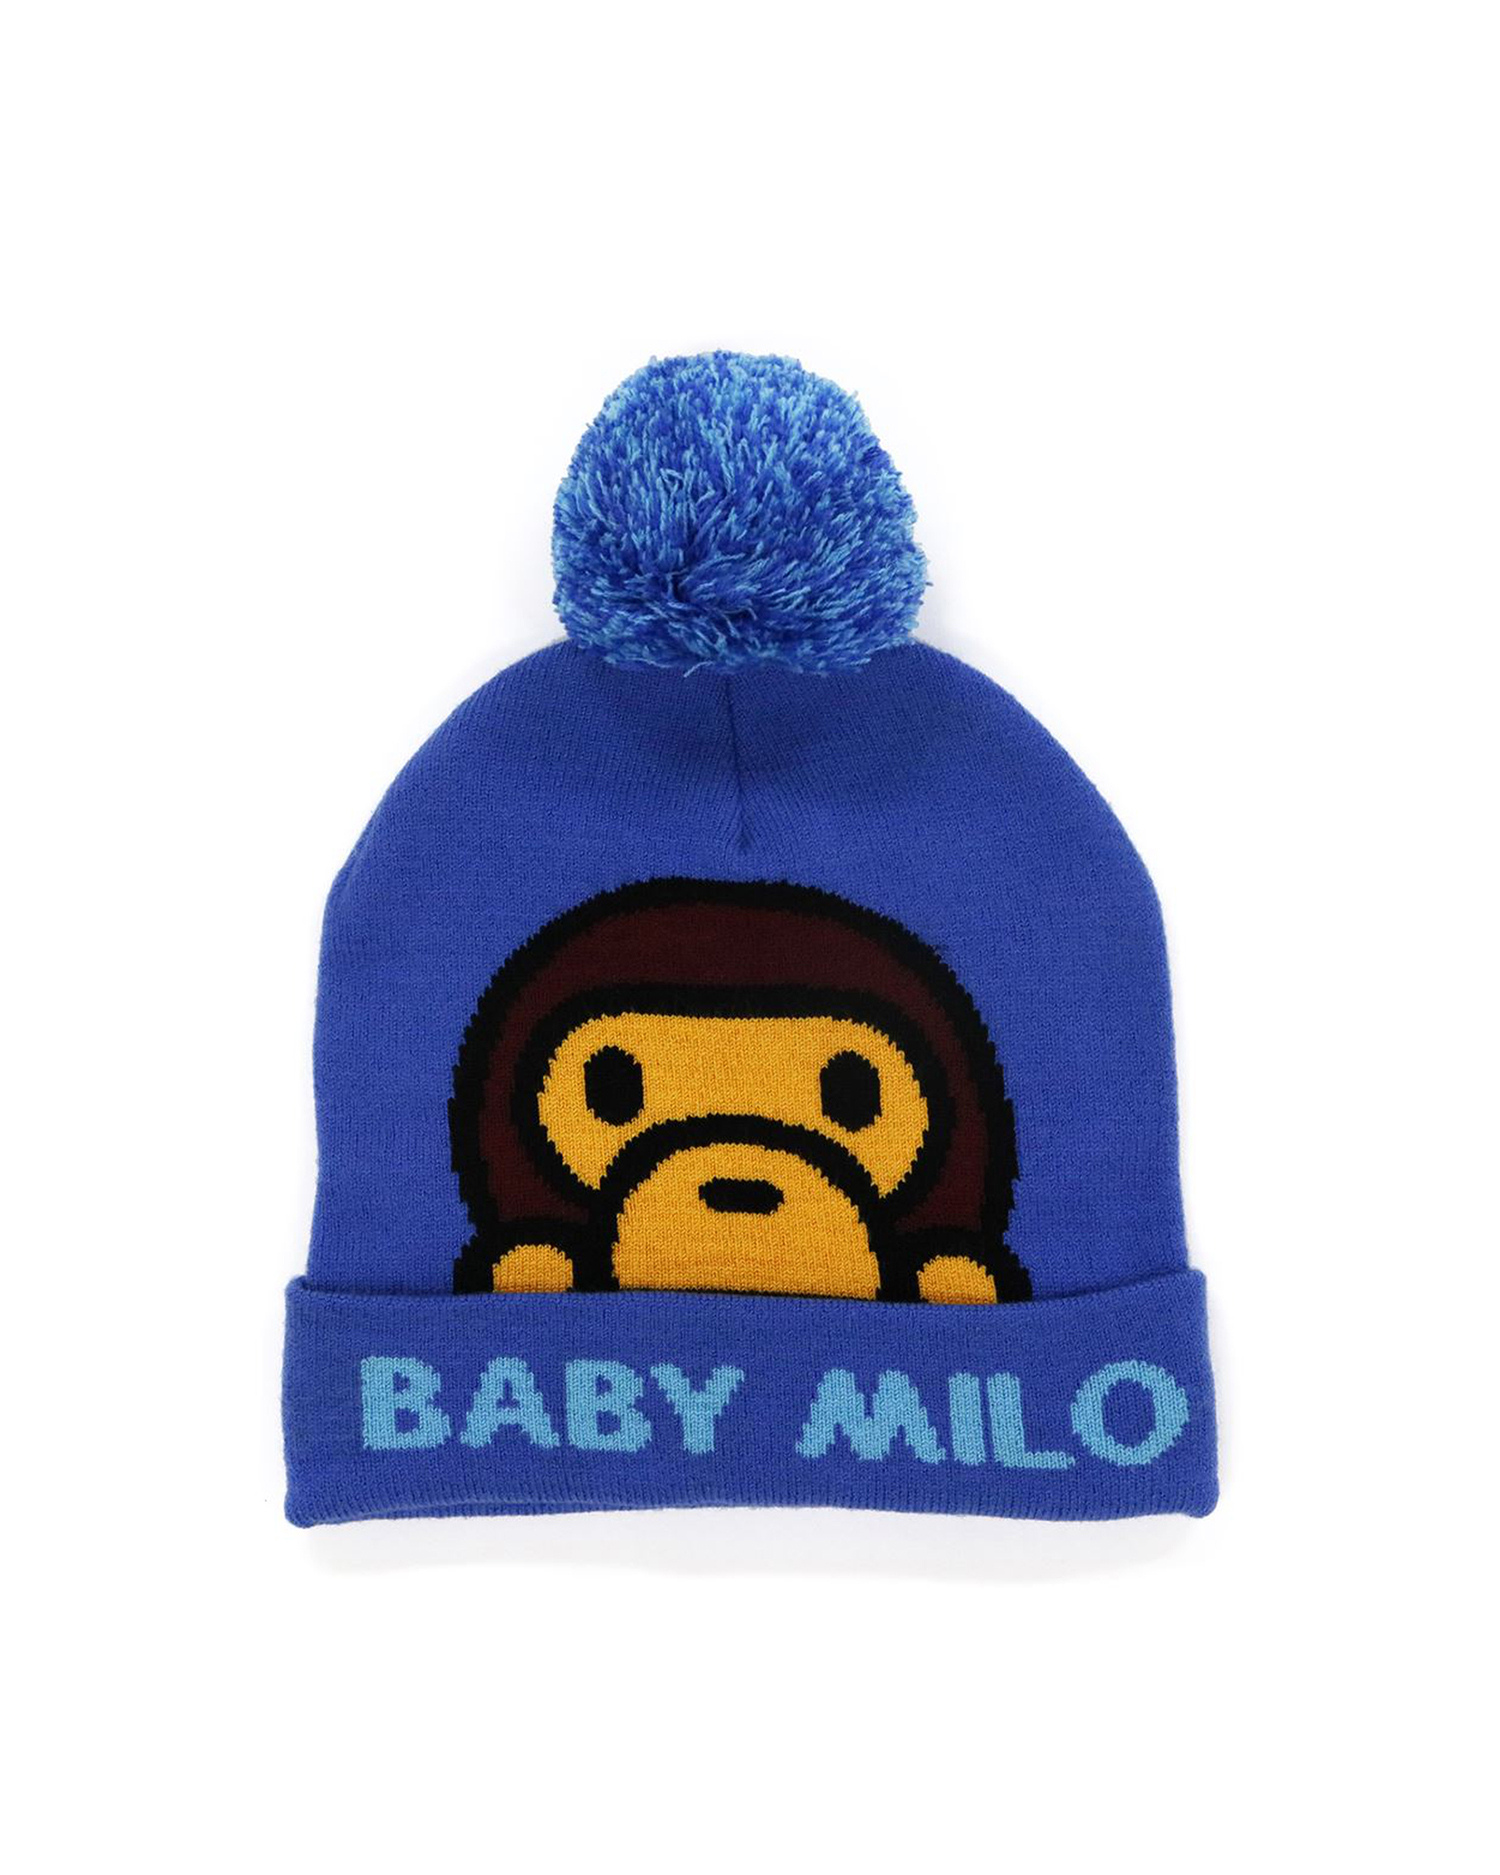 Shop Baby Milo Knit Cap Online | BAPE